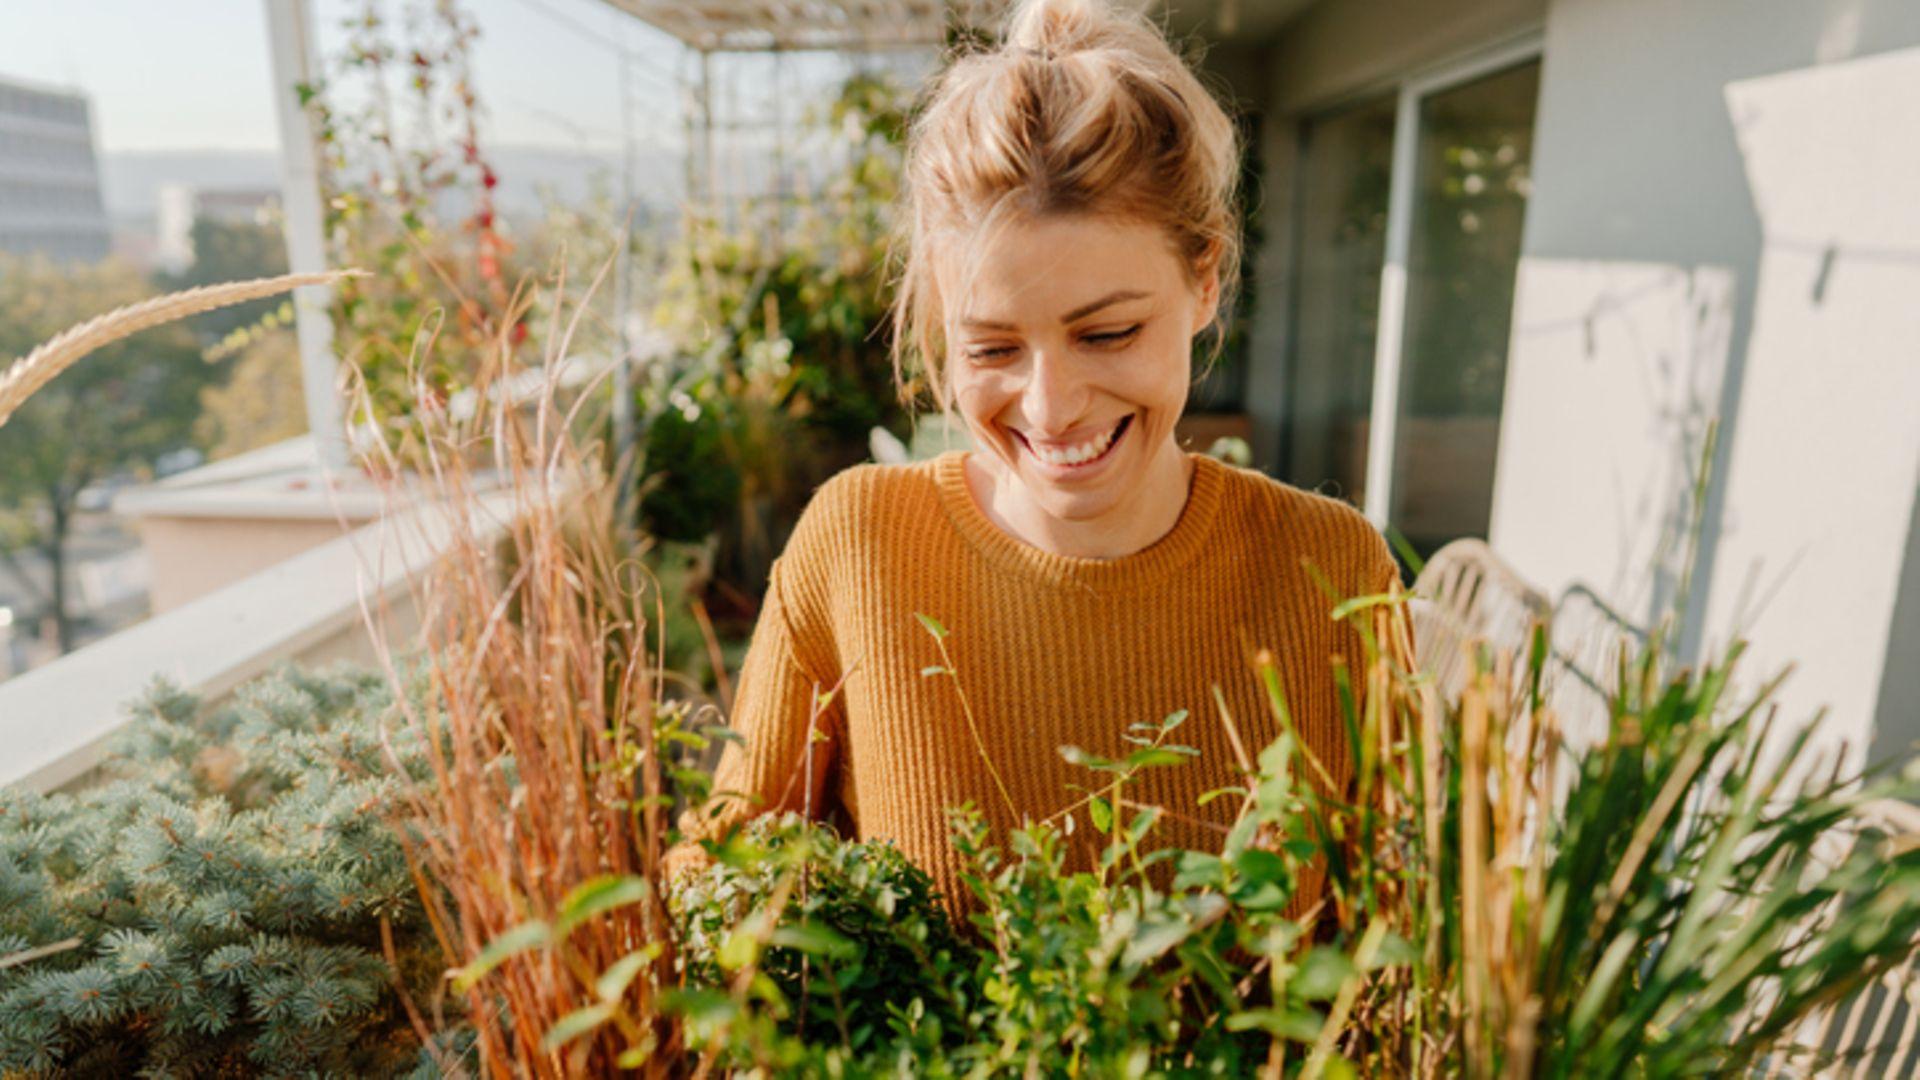 Persönliche Entwicklung: glückliche Frau genießt Pflanzen auf einem Balkon